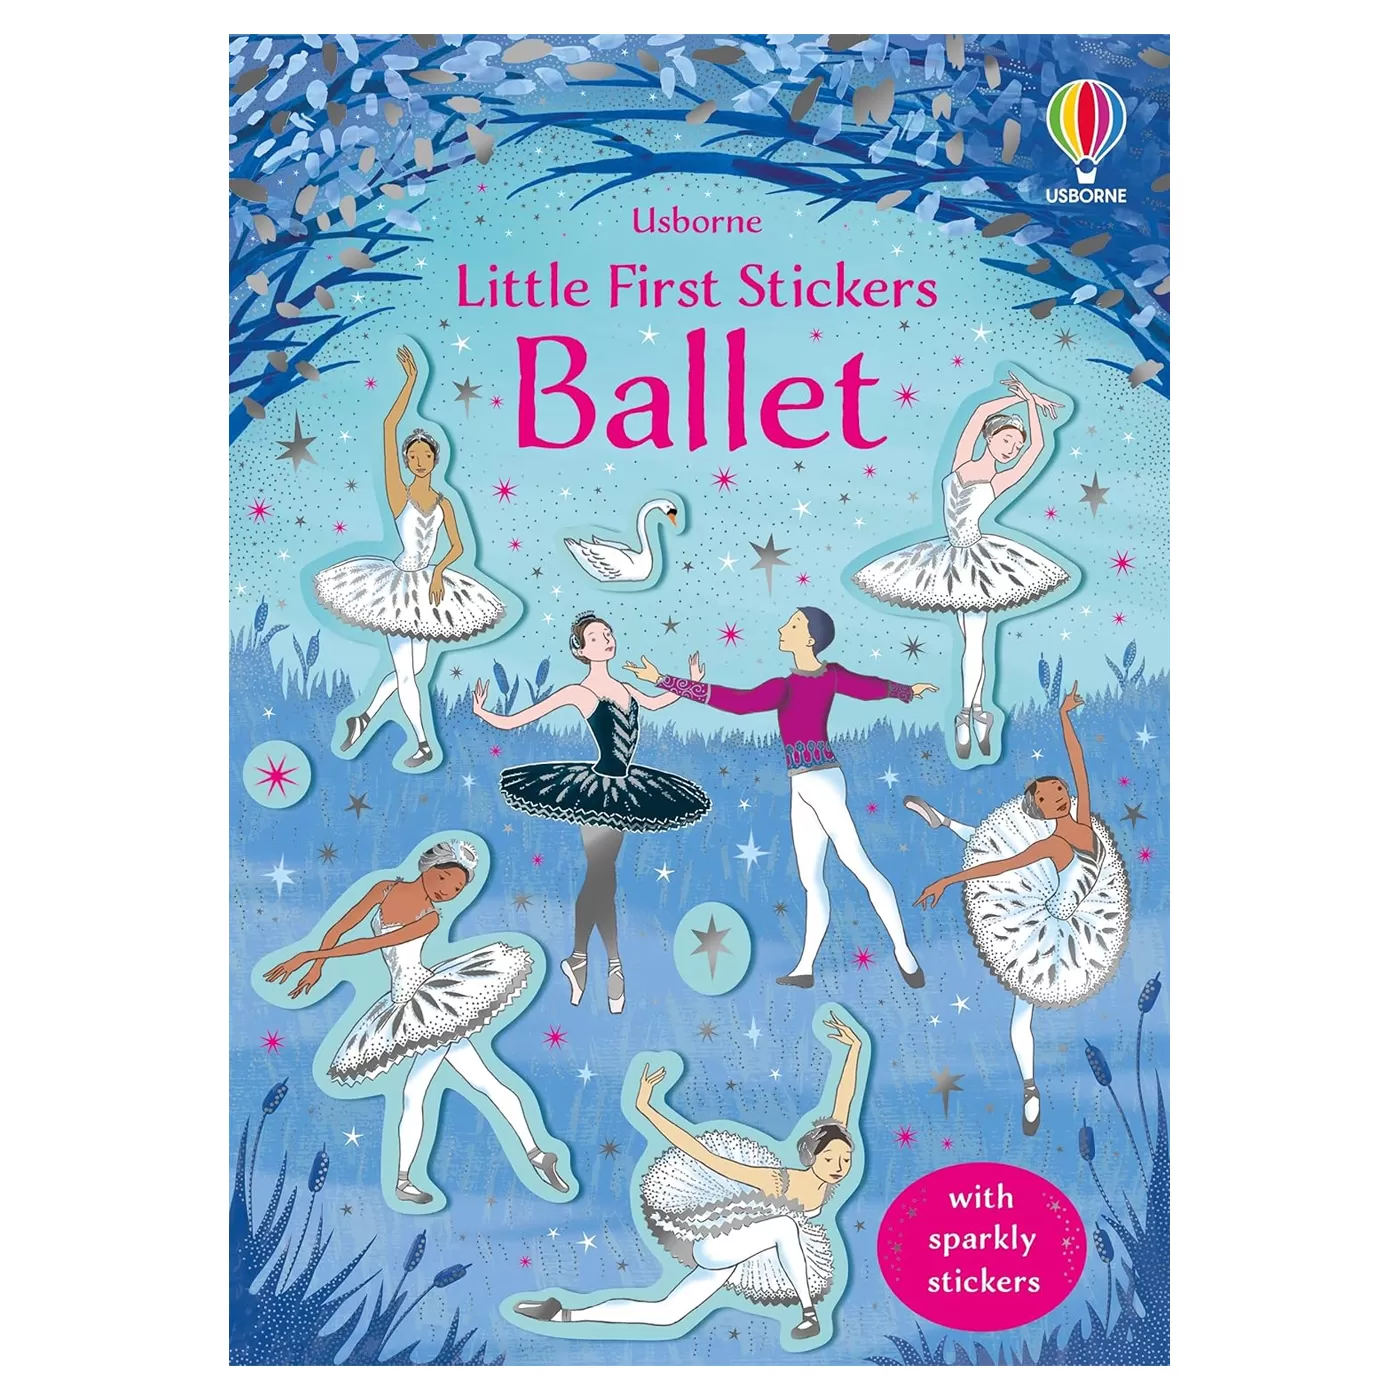  Little First Stickers Ballet